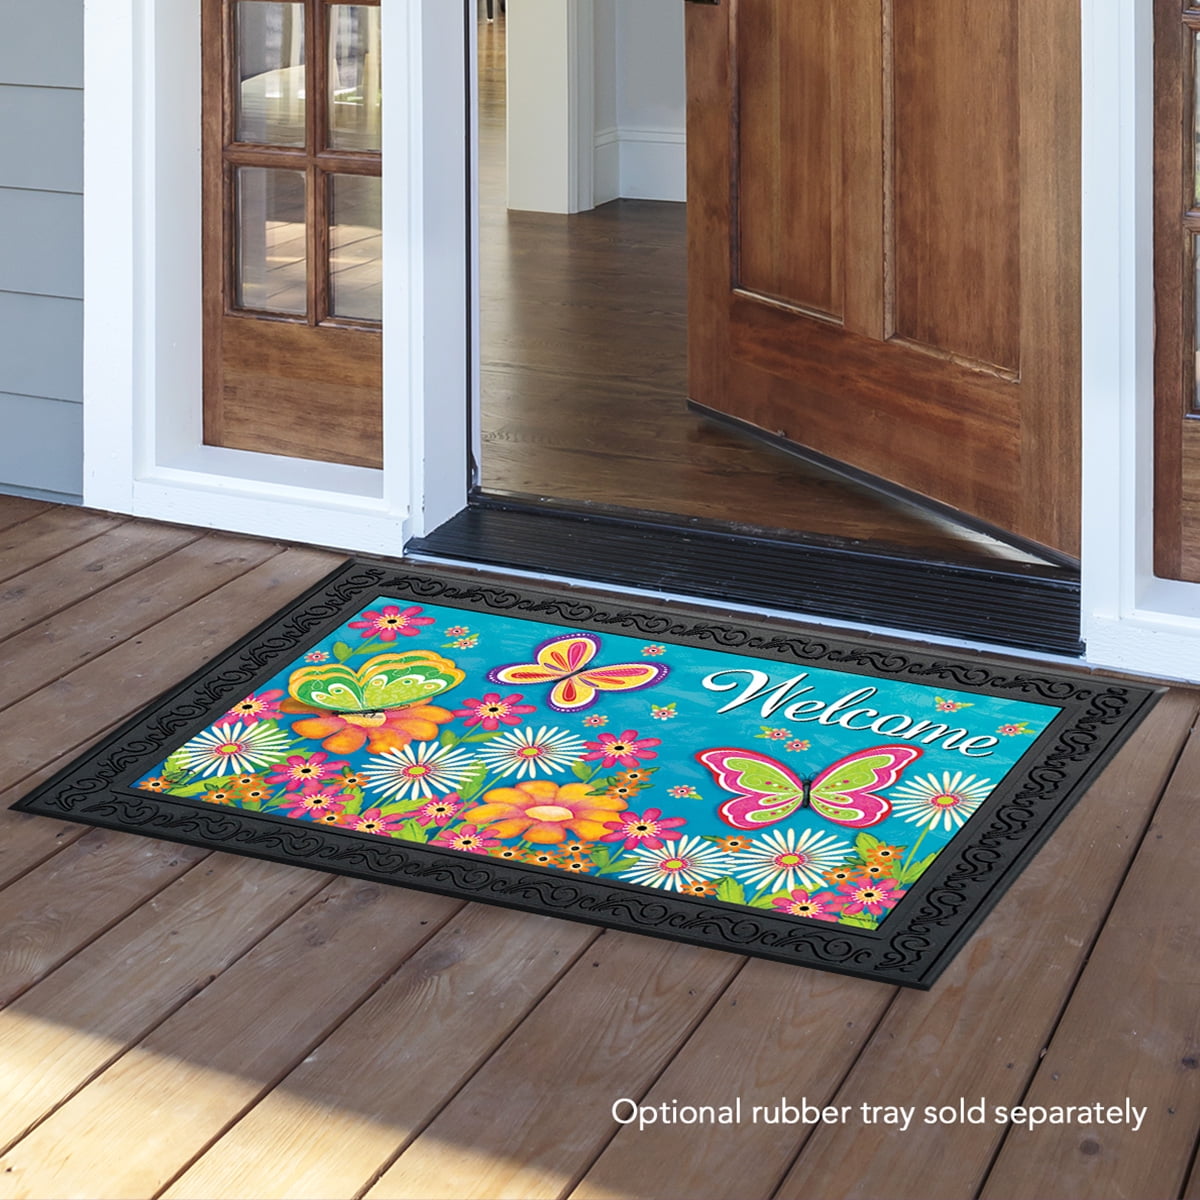 18" x 30" Vibrant Butterfly Garden Welcome Doormat